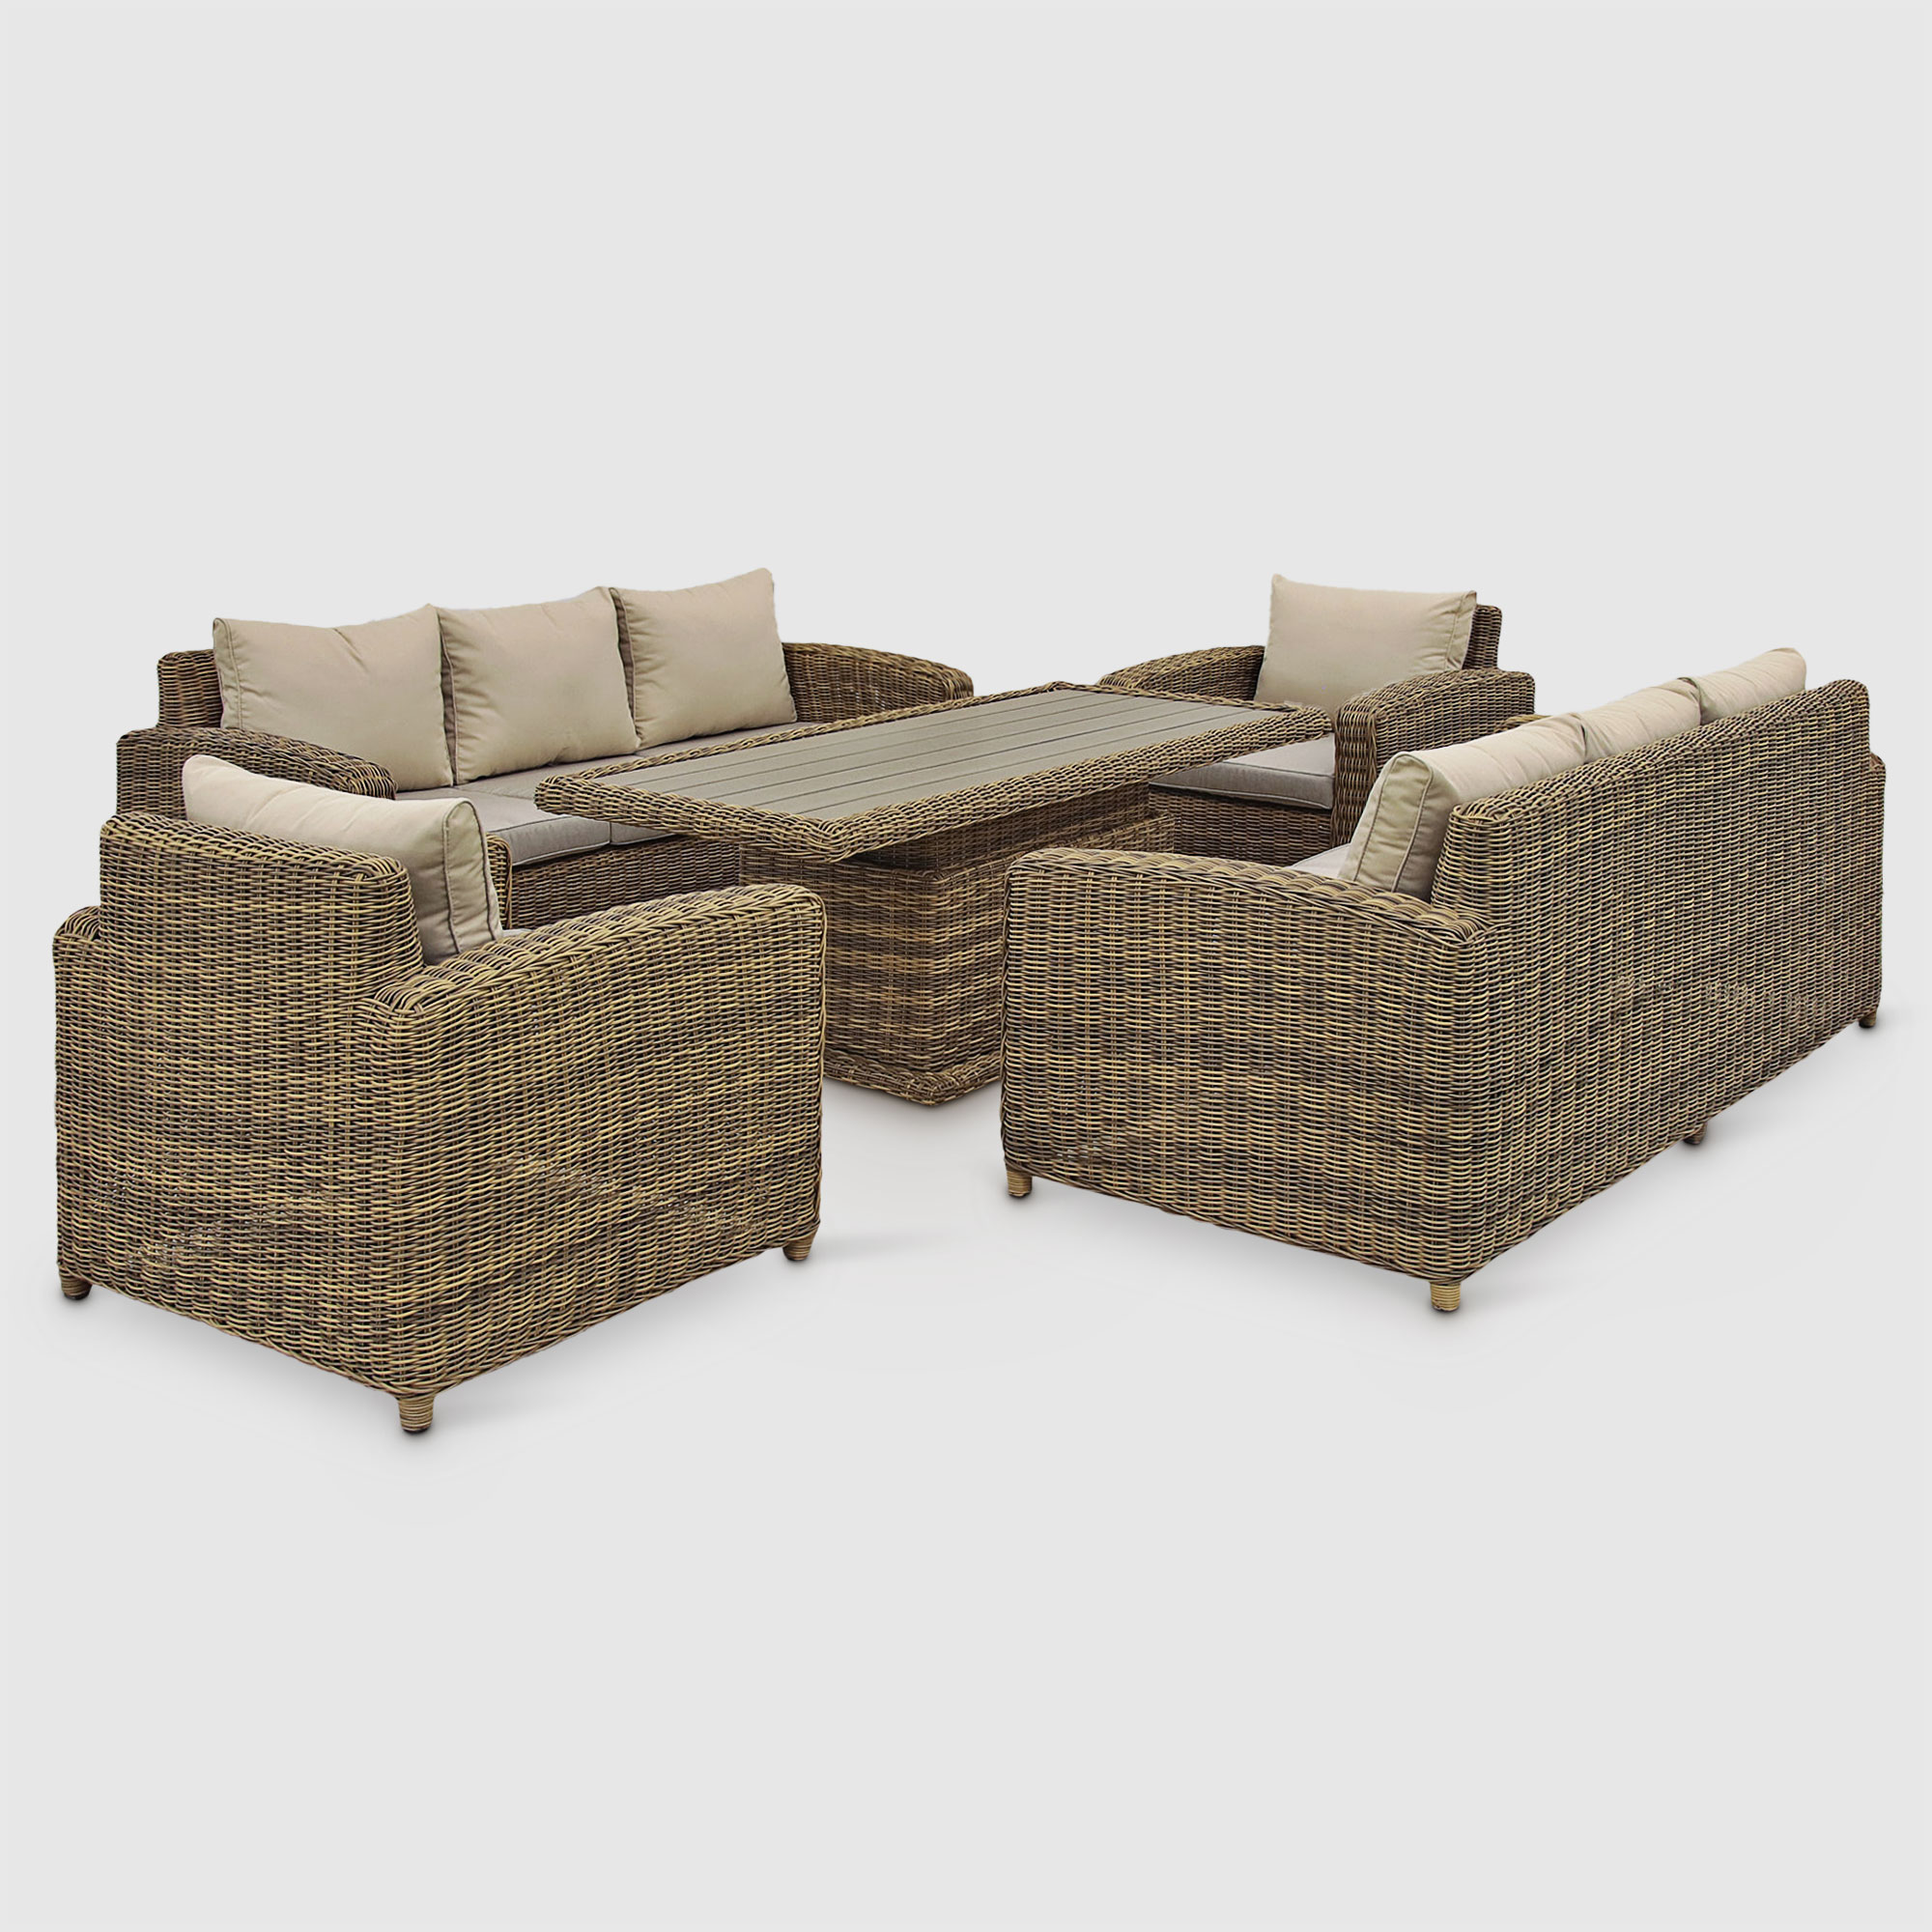 Комплект садовой мебели Yuhang коричнево-бежевый из 5 предметов комплект мебели malta из 3 предметов